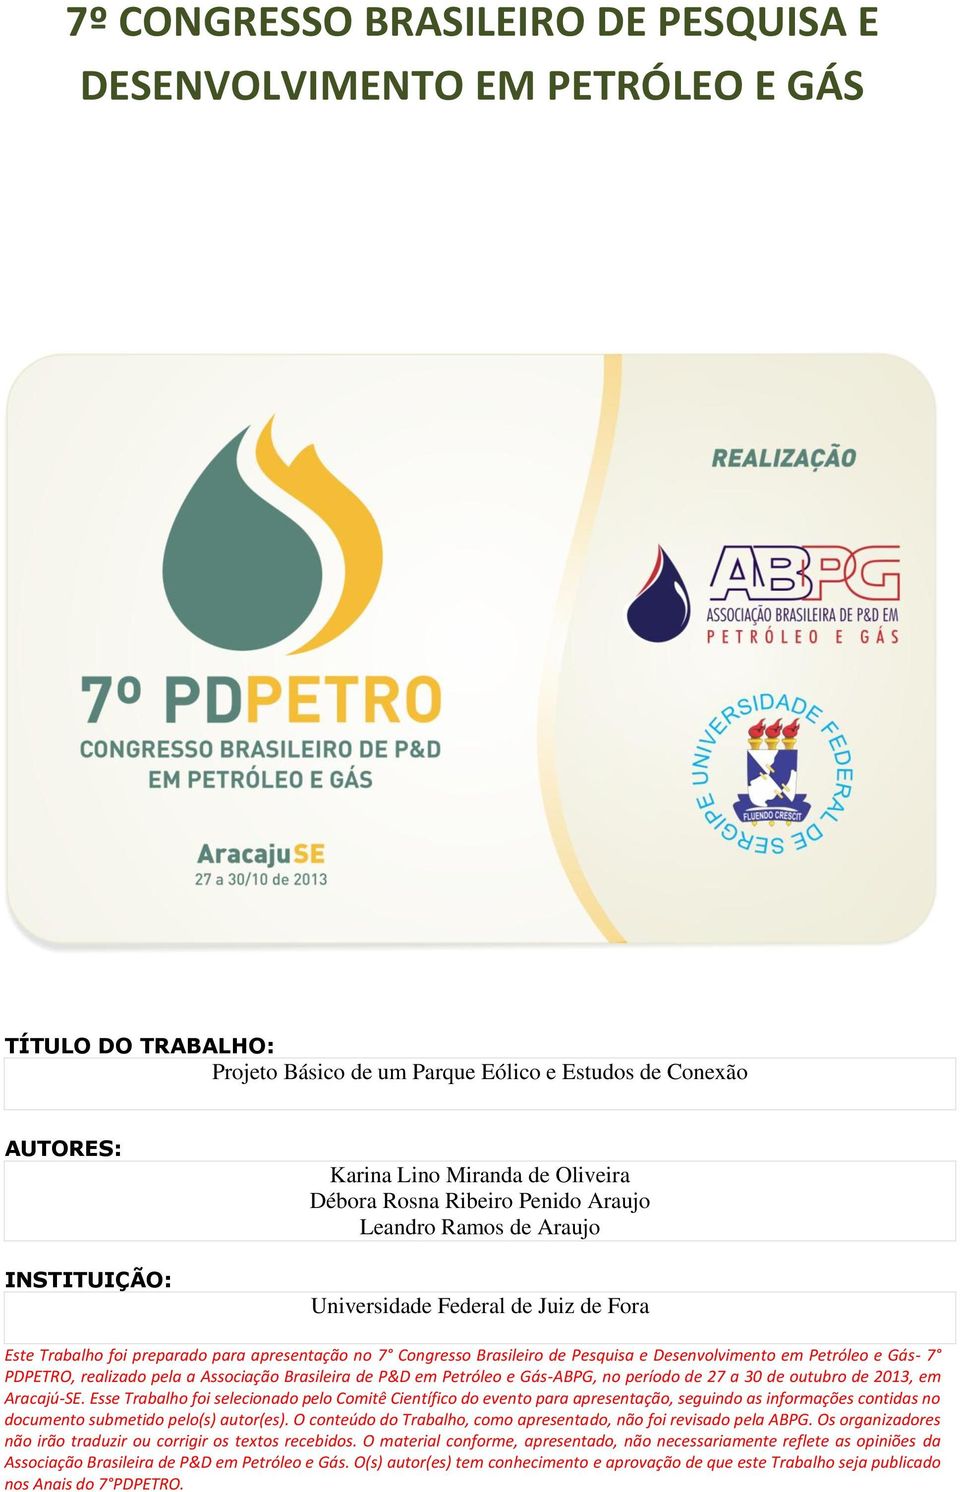 Desenvolvimento em Petróleo e Gás- 7 PDPETRO, realizado pela a Associação Brasileira de P&D em Petróleo e Gás-ABPG, no período de 27 a 30 de outubro de 2013, em Aracajú-SE.